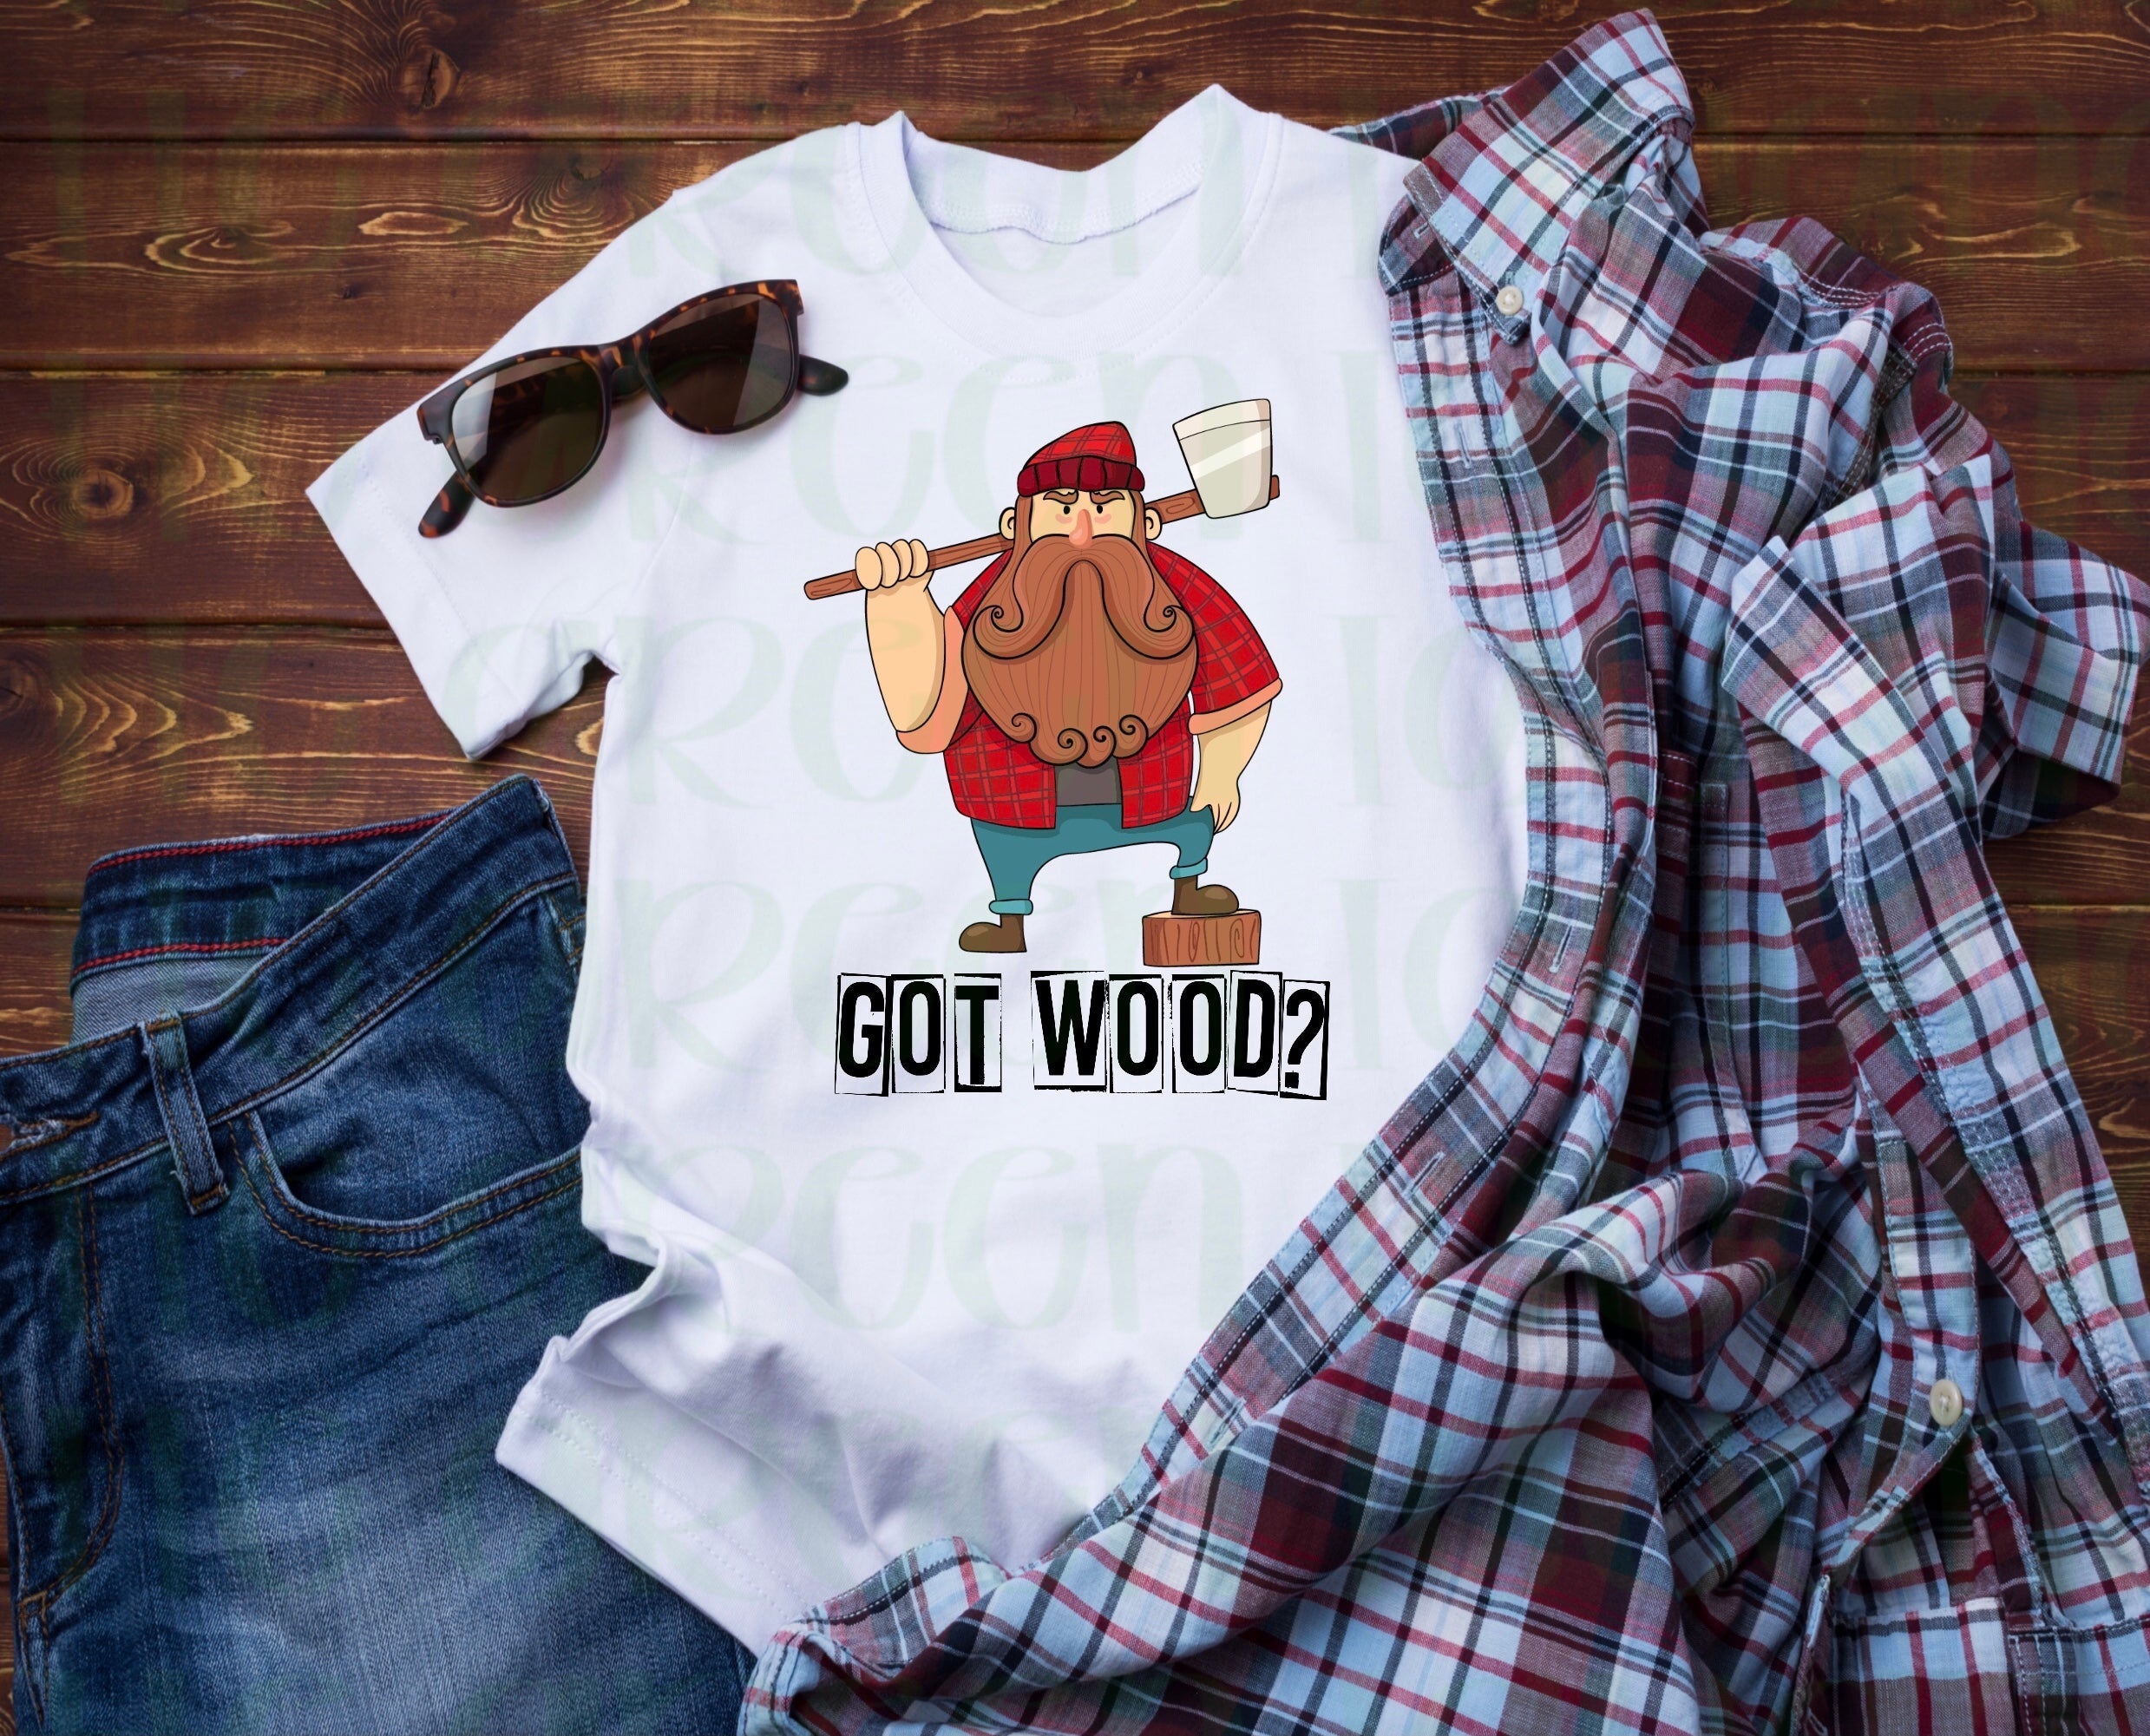 Got wood? - DTF transfer